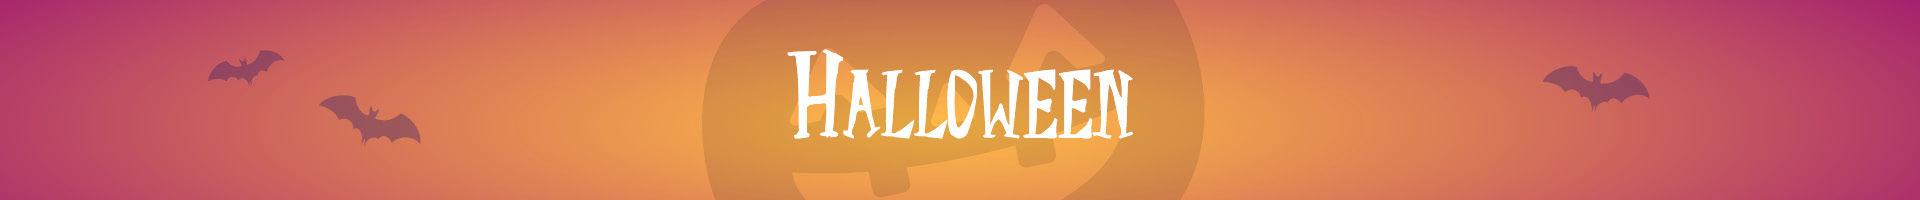 Halloween kostymer til barn og voksne